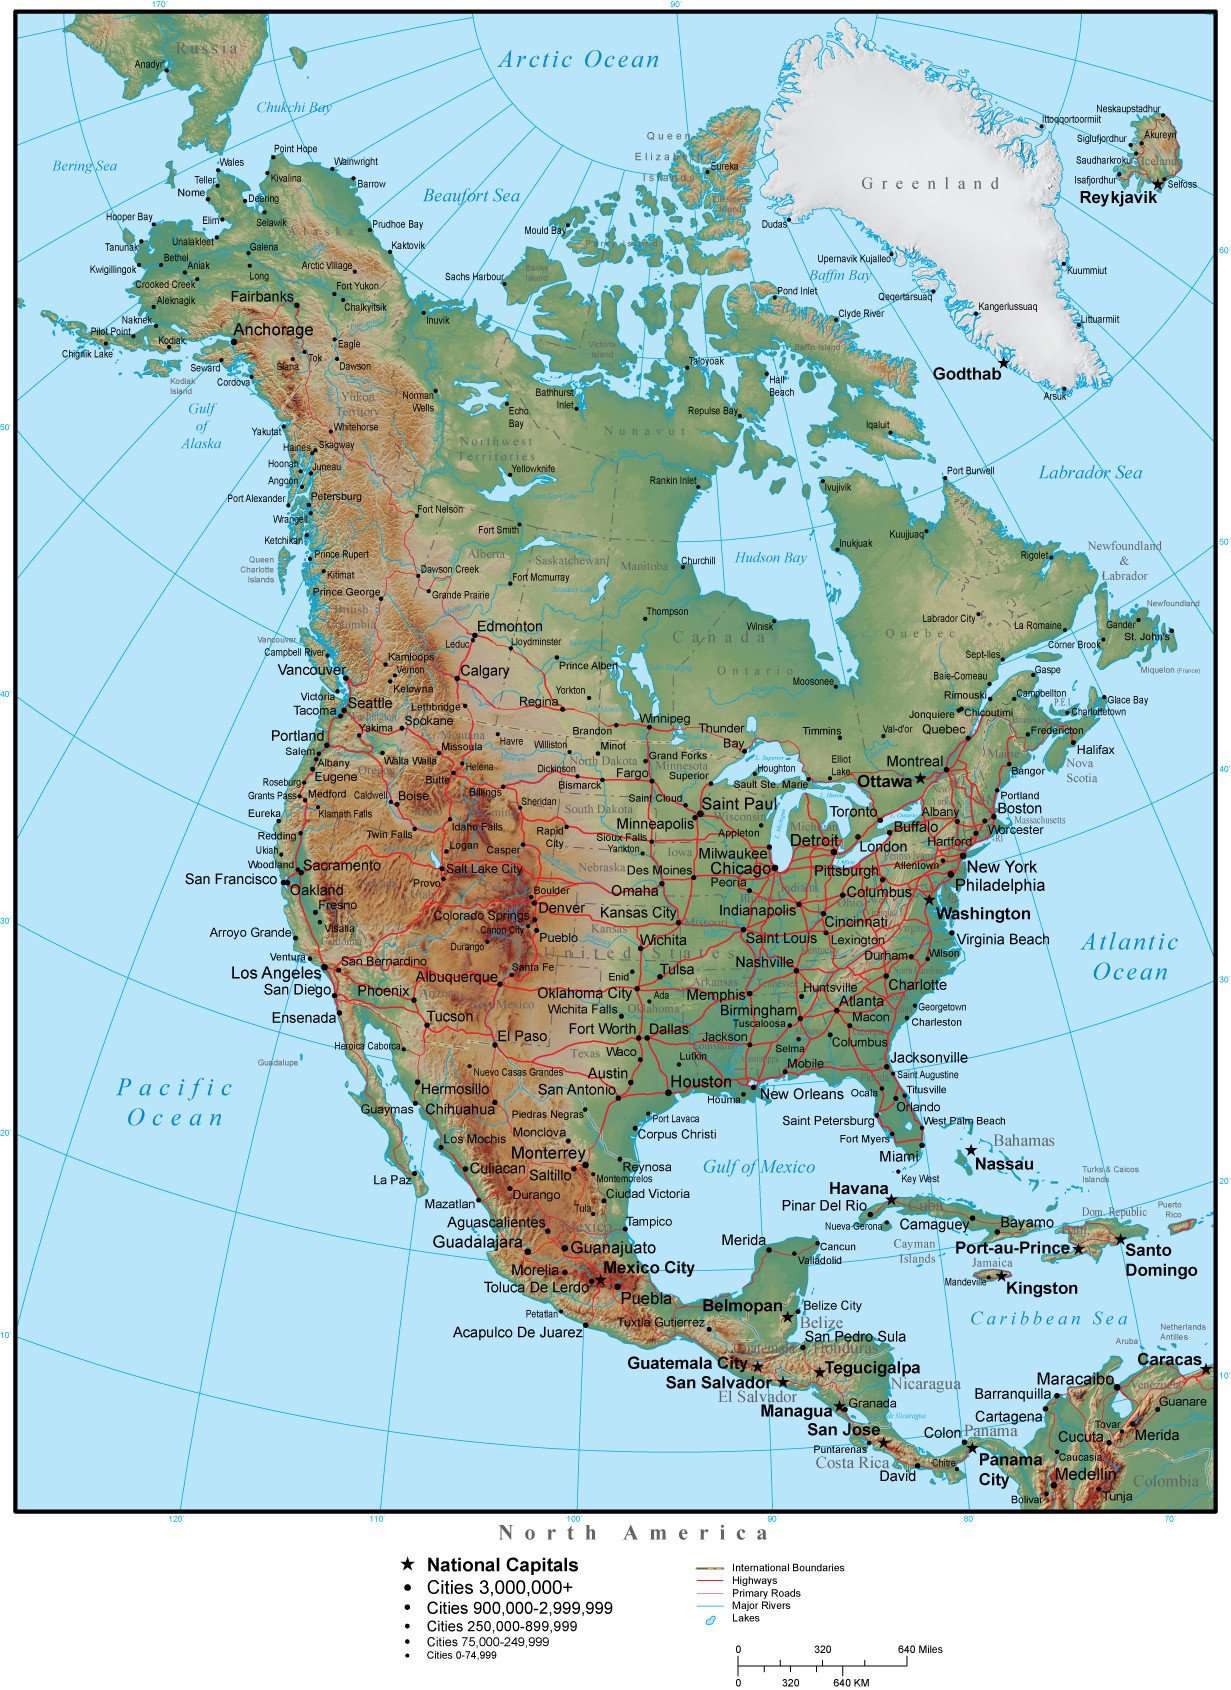 Кордильеры находятся в северной америке. Горы Кордильеры на физической карте Северной Америки. Скалистые горы на карте Северной Америки. Горы скалистые горы на карте Северной Америки. Скалистые горы на контурной карте Северной Америки.